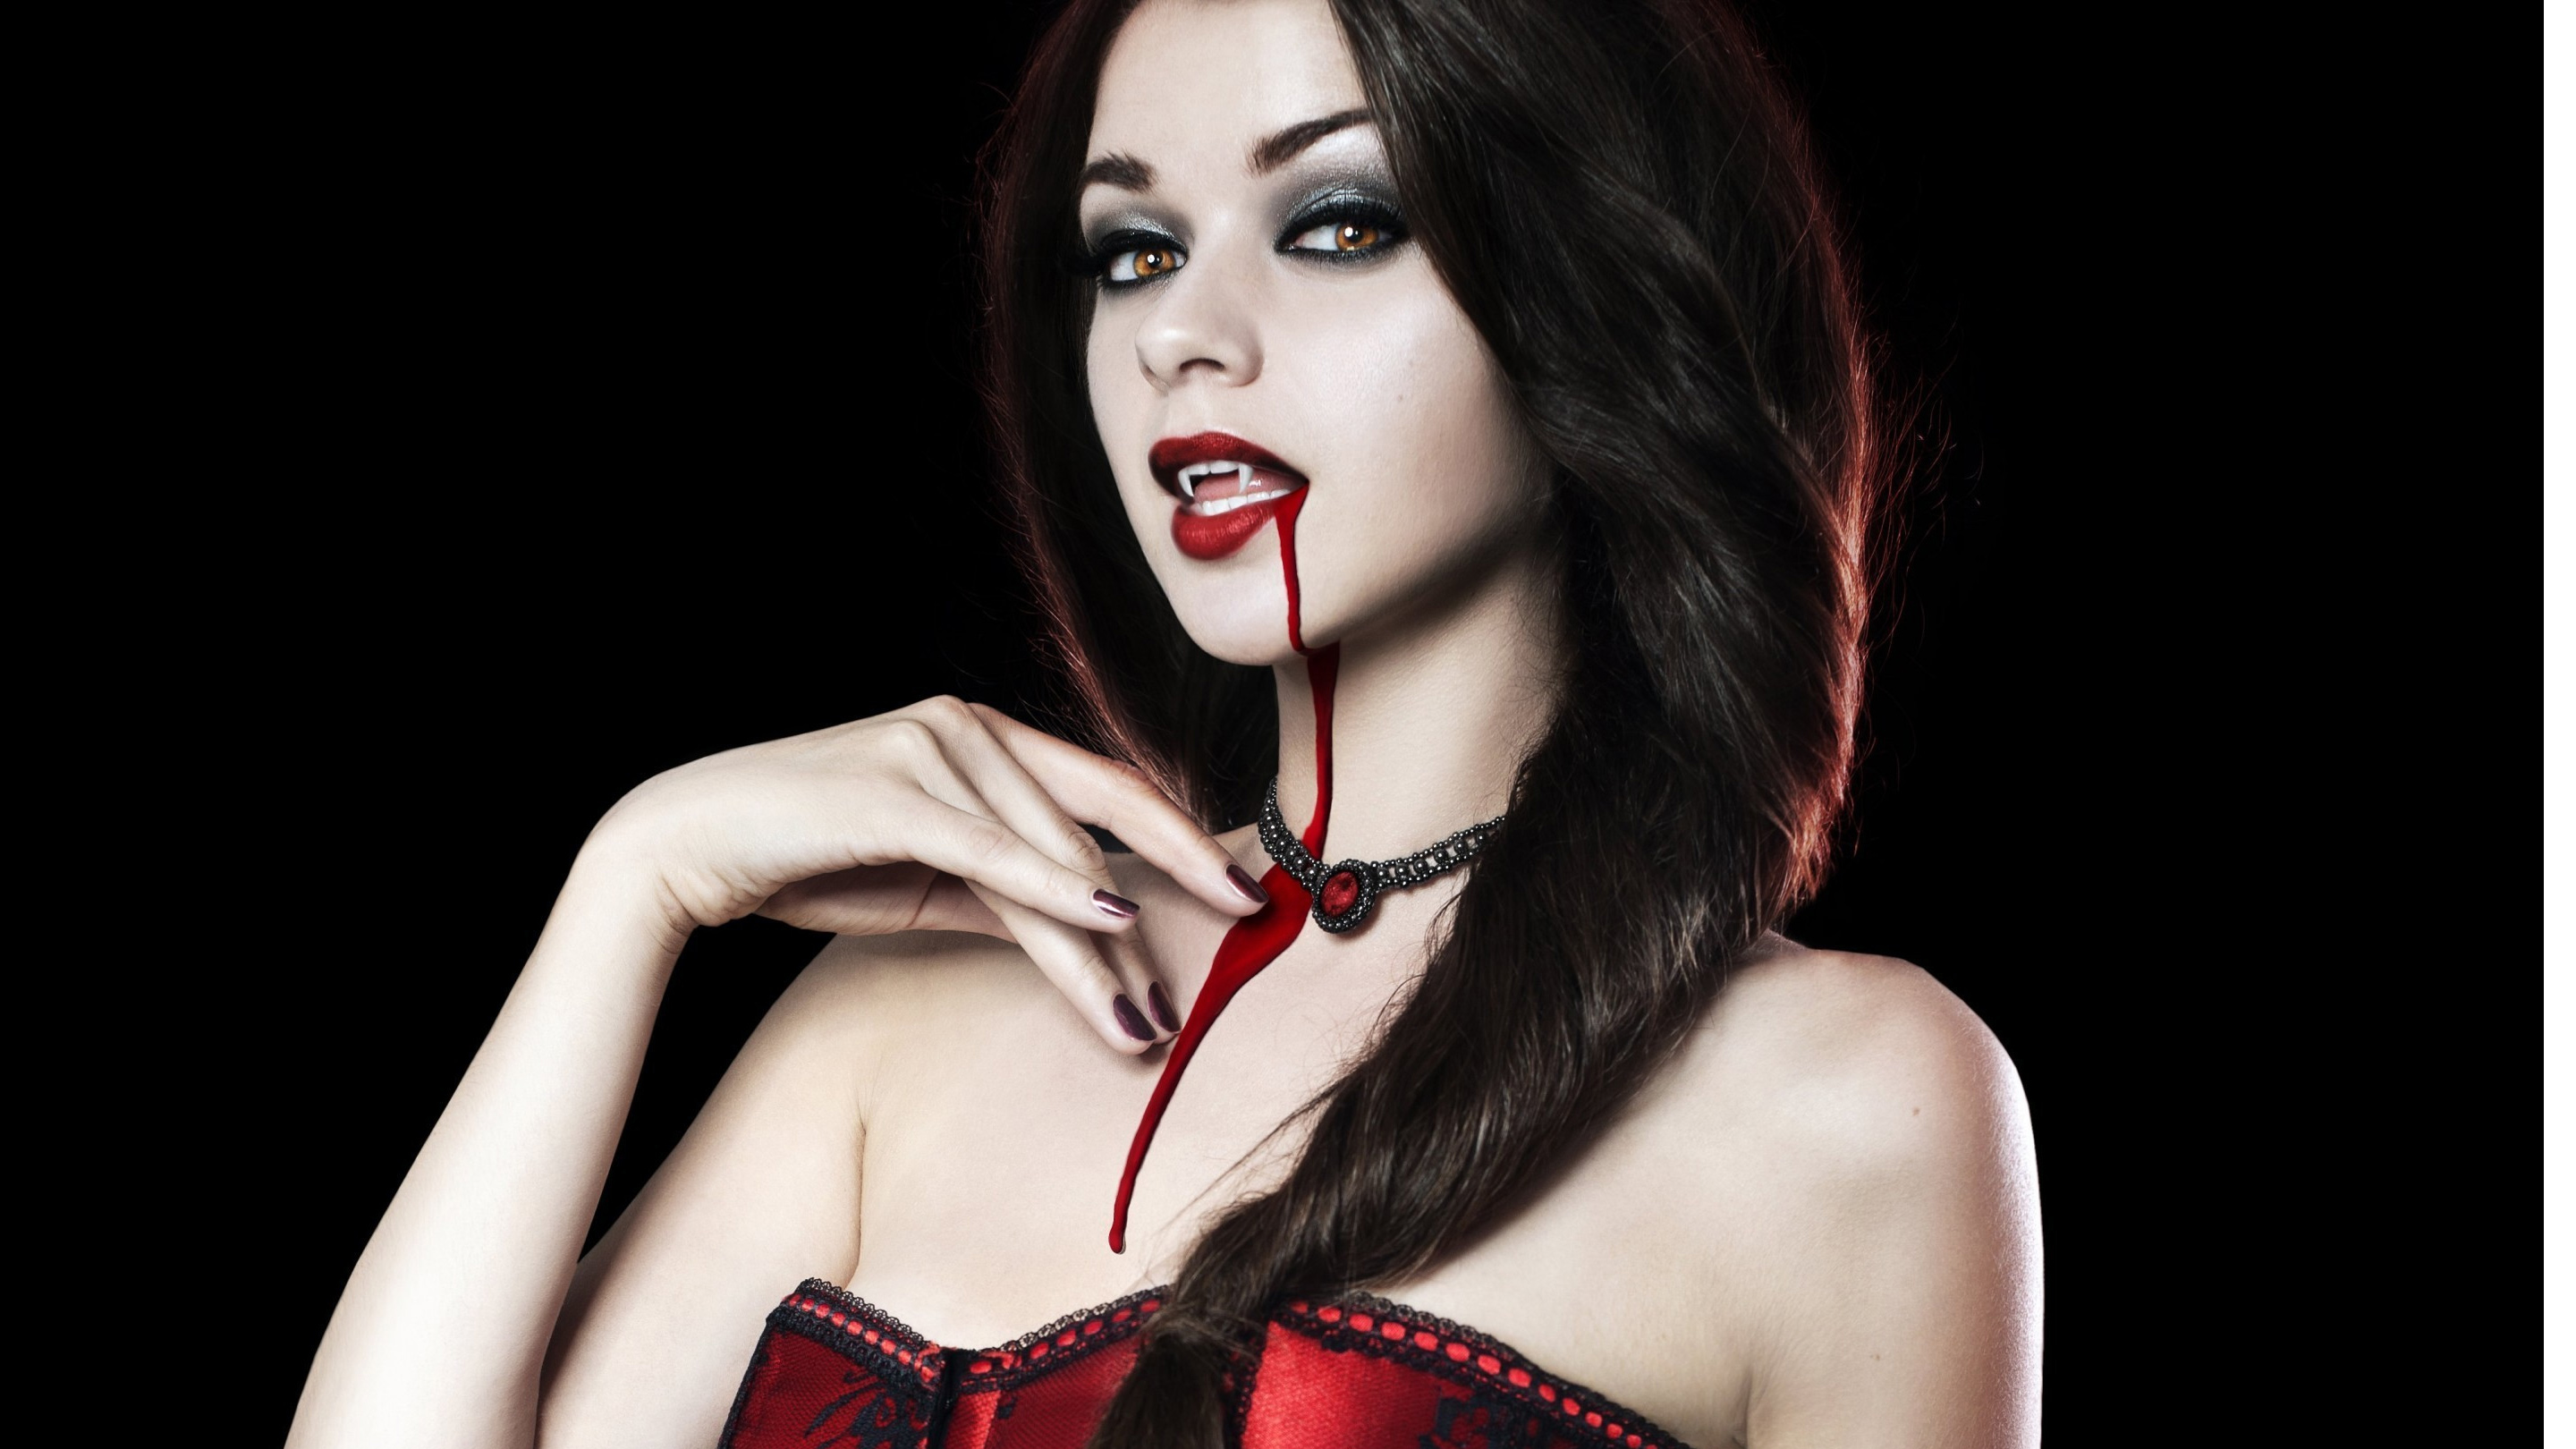 horror hot wallpapers,red,lip,beauty,fetish model,black hair